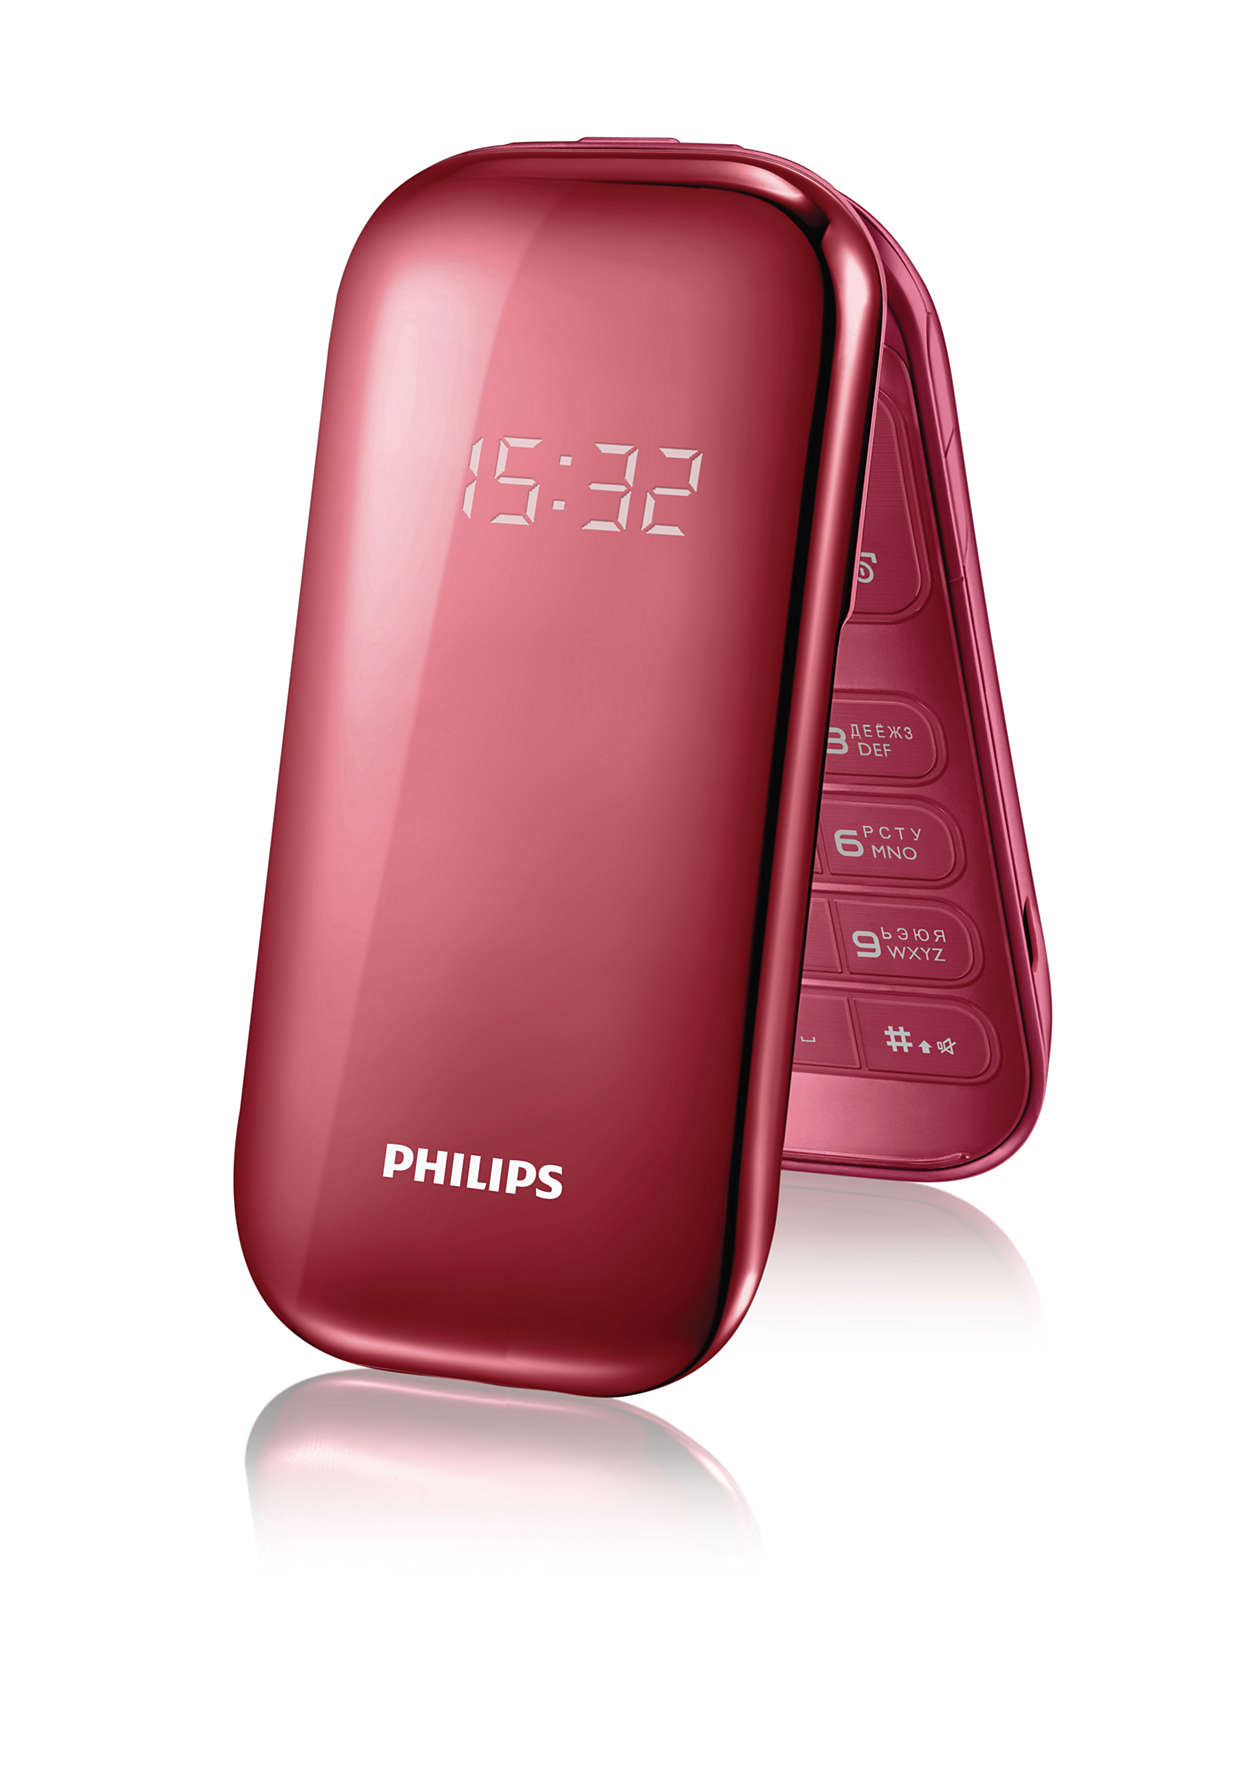 Телефон раскладушка красный. Philips e320 красный. Мобильный телефон Philips e320. Кнопочный сотовый Филипс раскладушка. Philips e225.